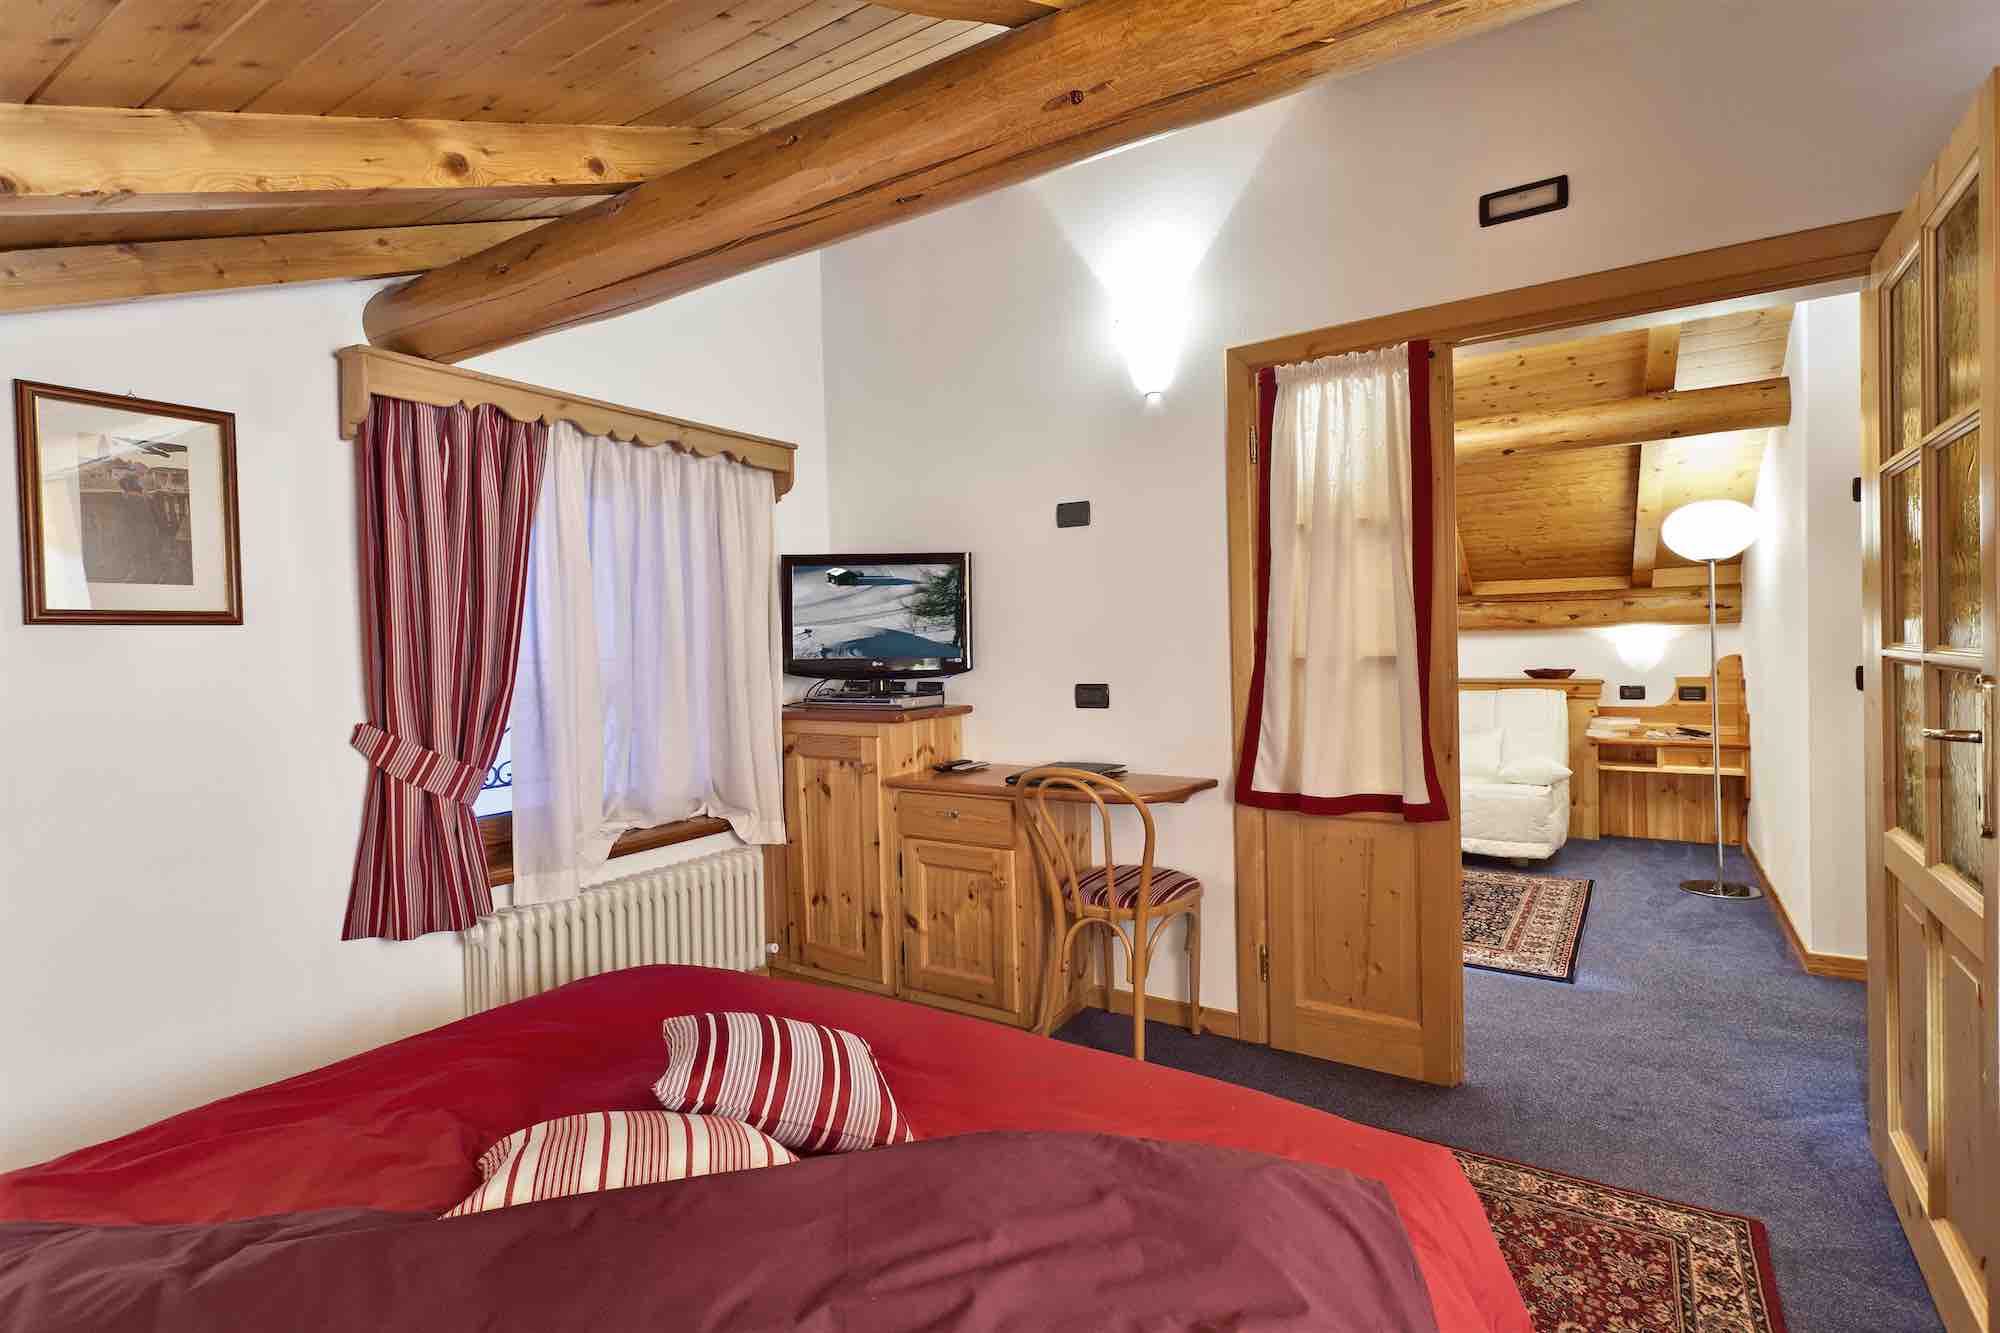 Hotel Livigno - Via Ostaria N.573, Livigno 23041 - Room - Suite 7